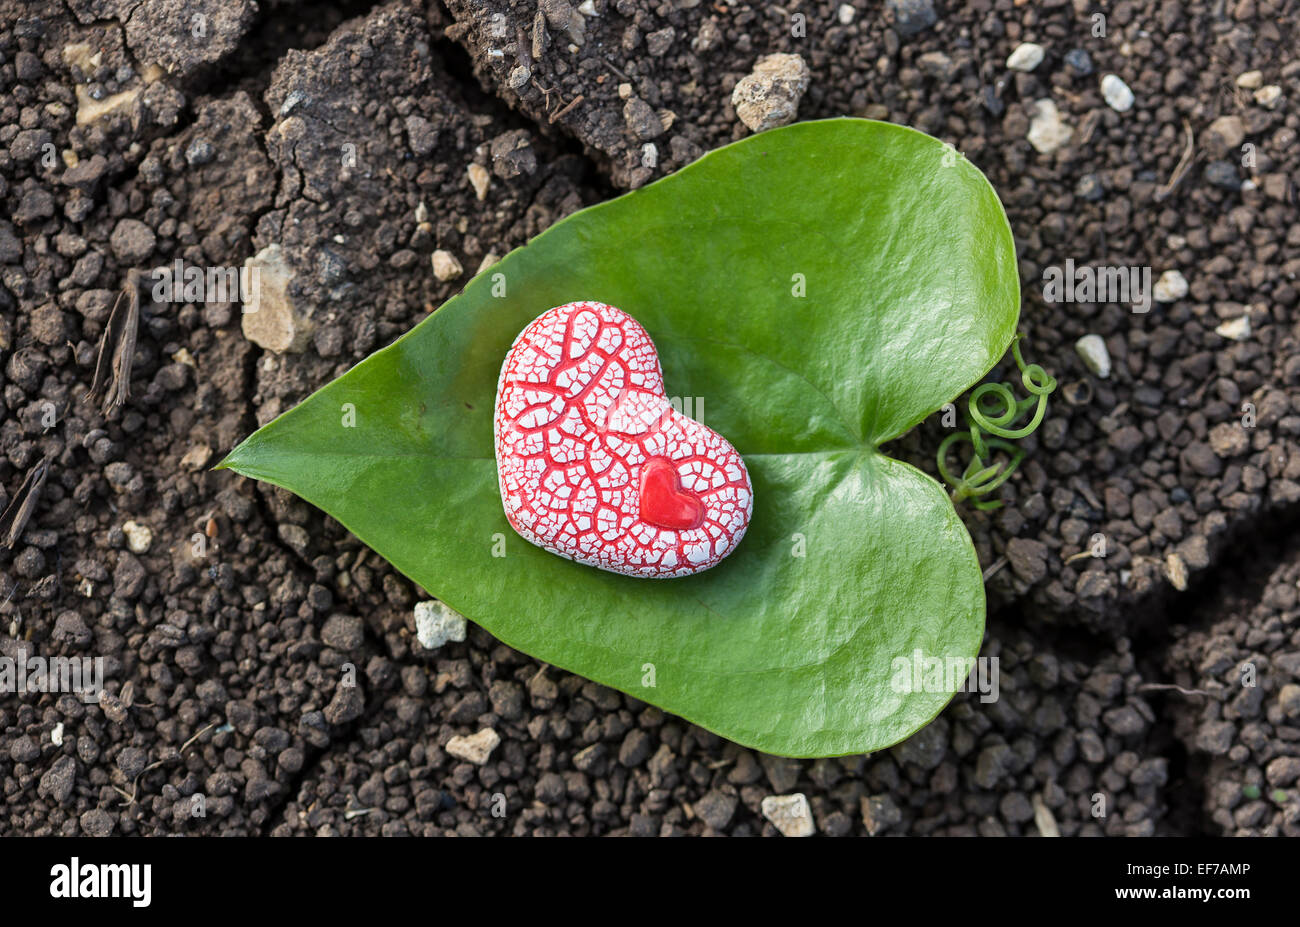 Un corazón moteado de cerámica roja con un pequeño corazón dentro de ella se coloca sobre una hoja en forma de corazón verde en suelo seco. Foto de stock